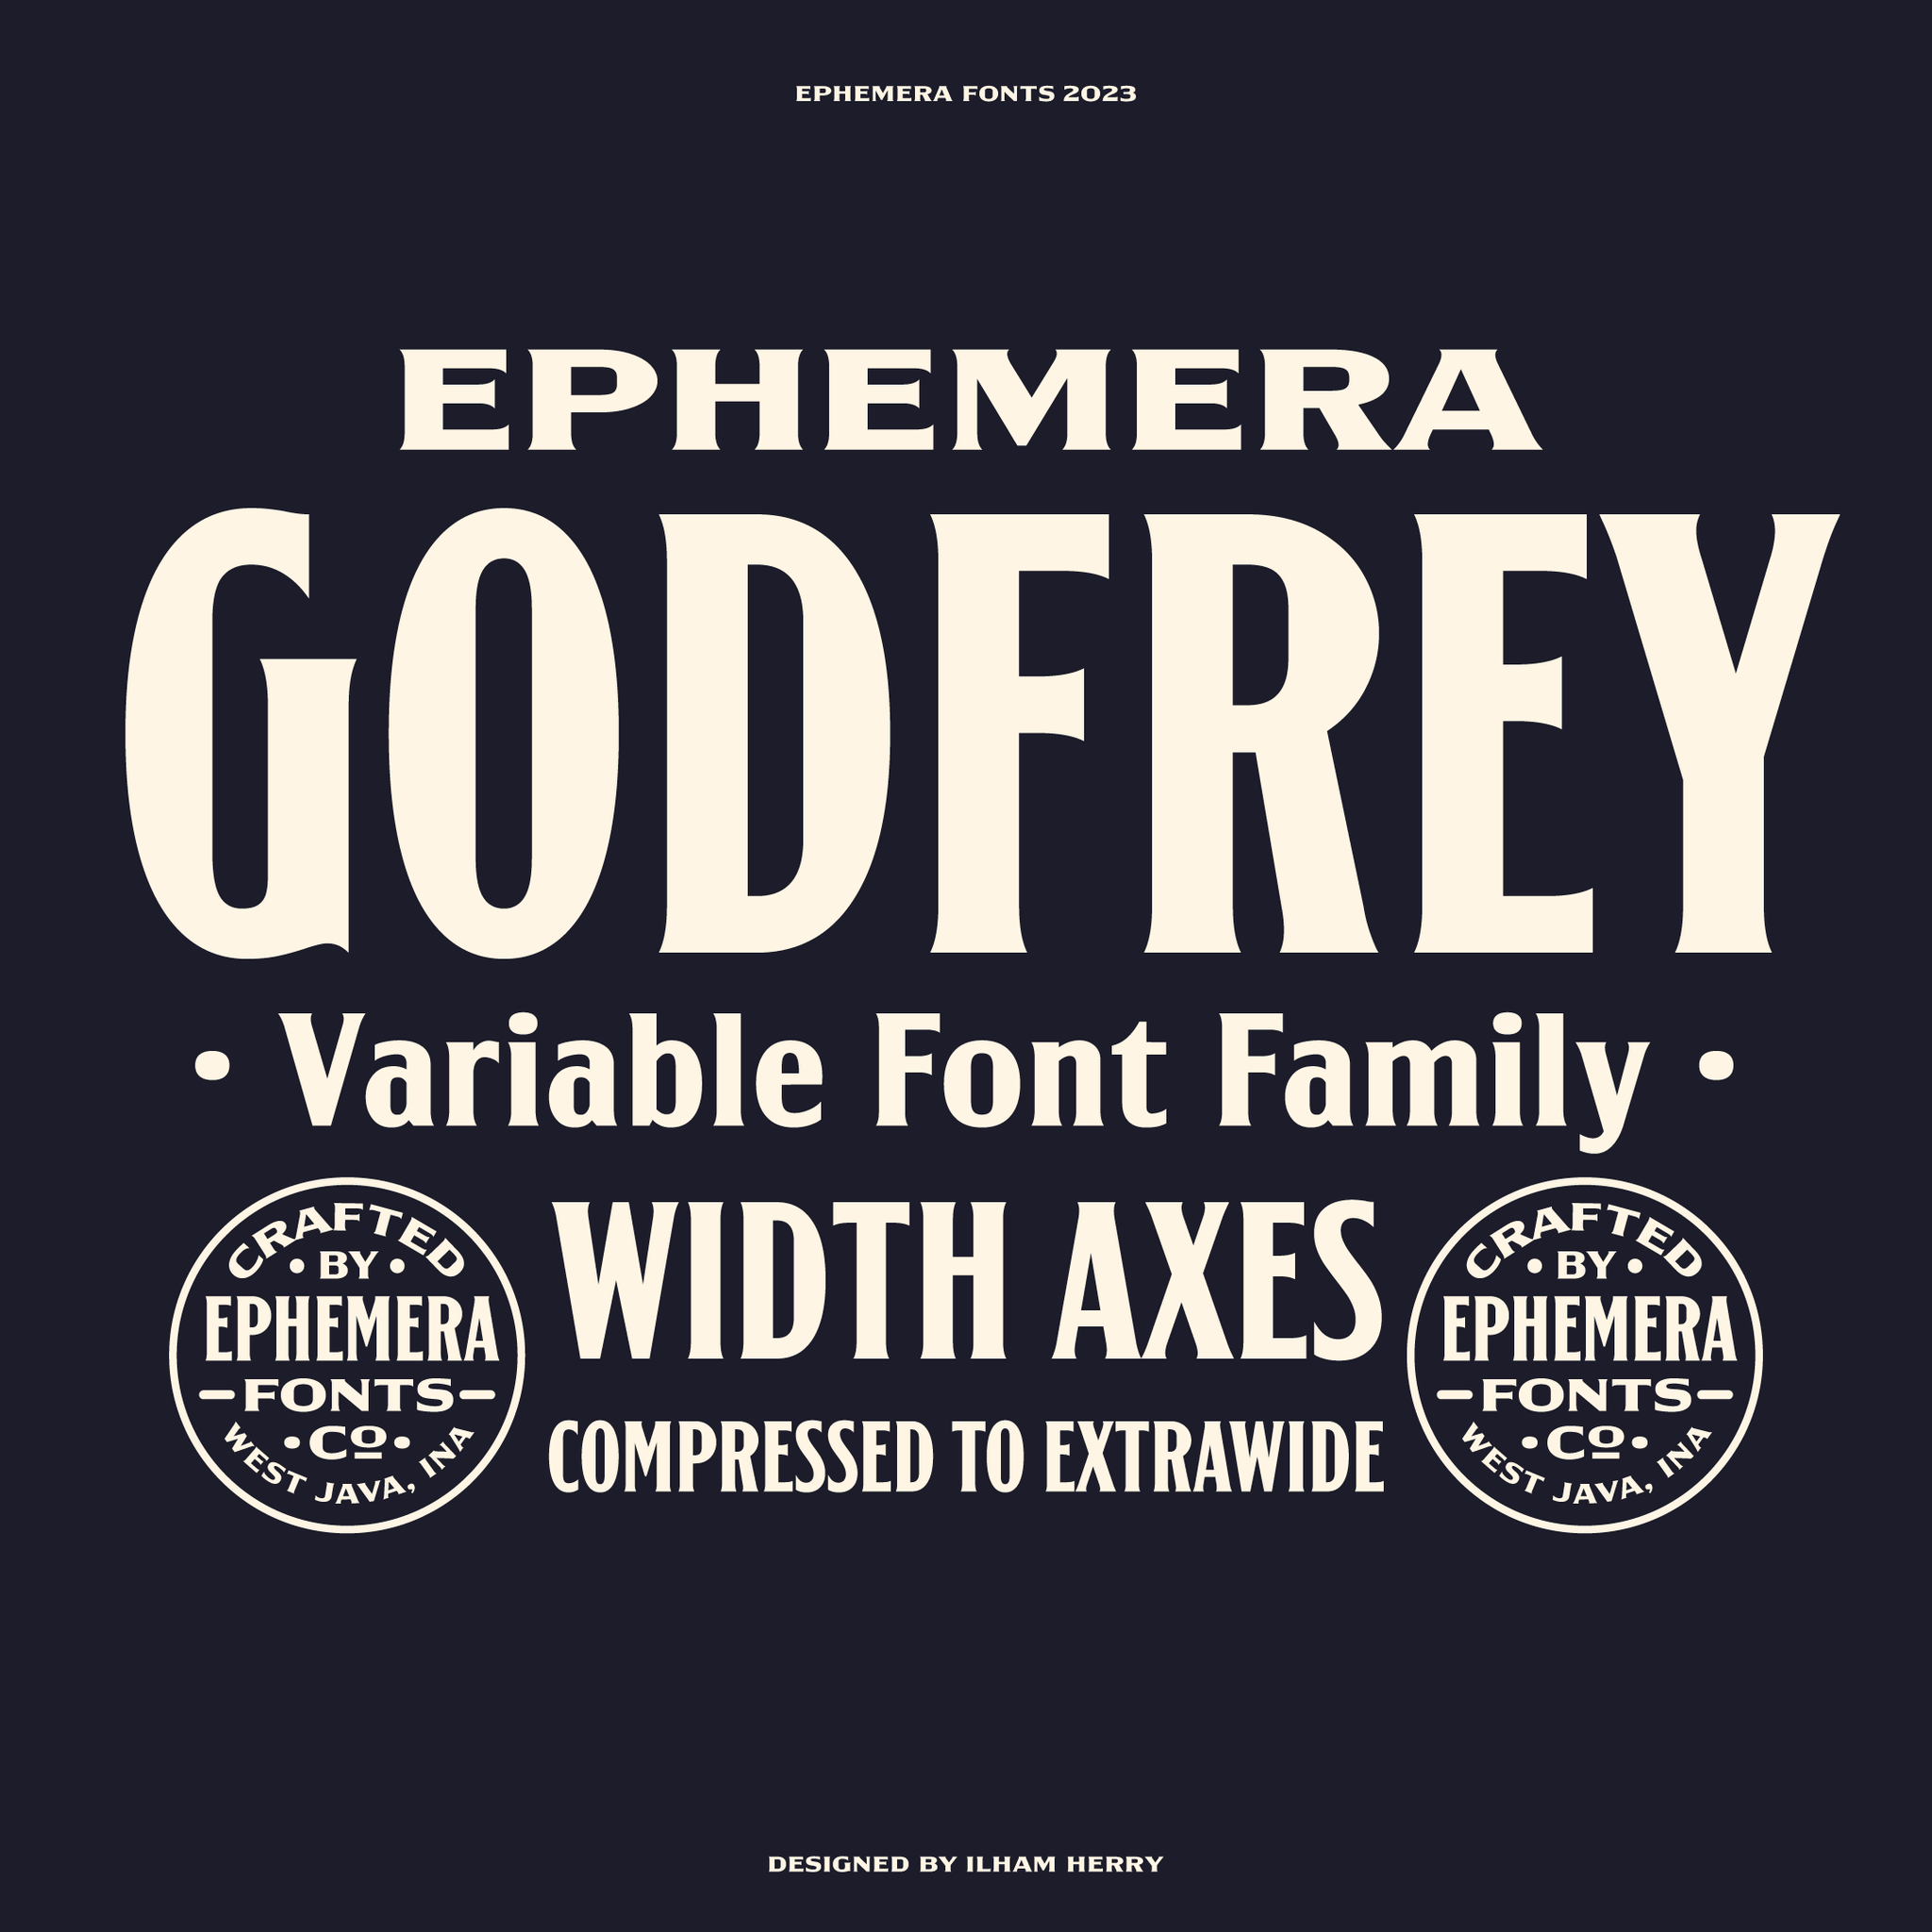 EFCO GODFREY Variable Font Family